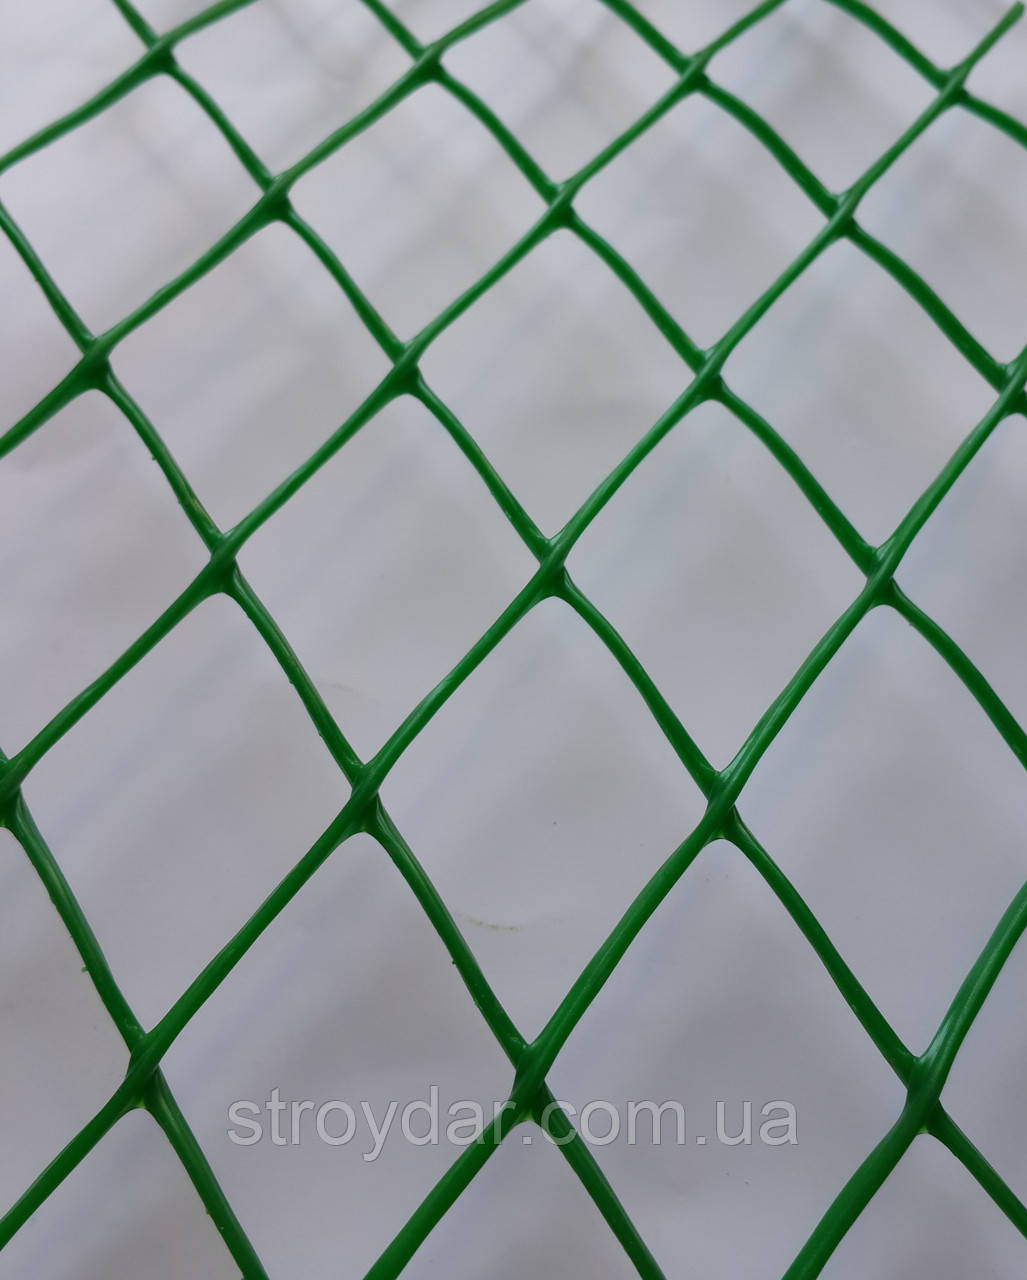 Сітка пластикова декоративна ромб ДР 30 Зелена